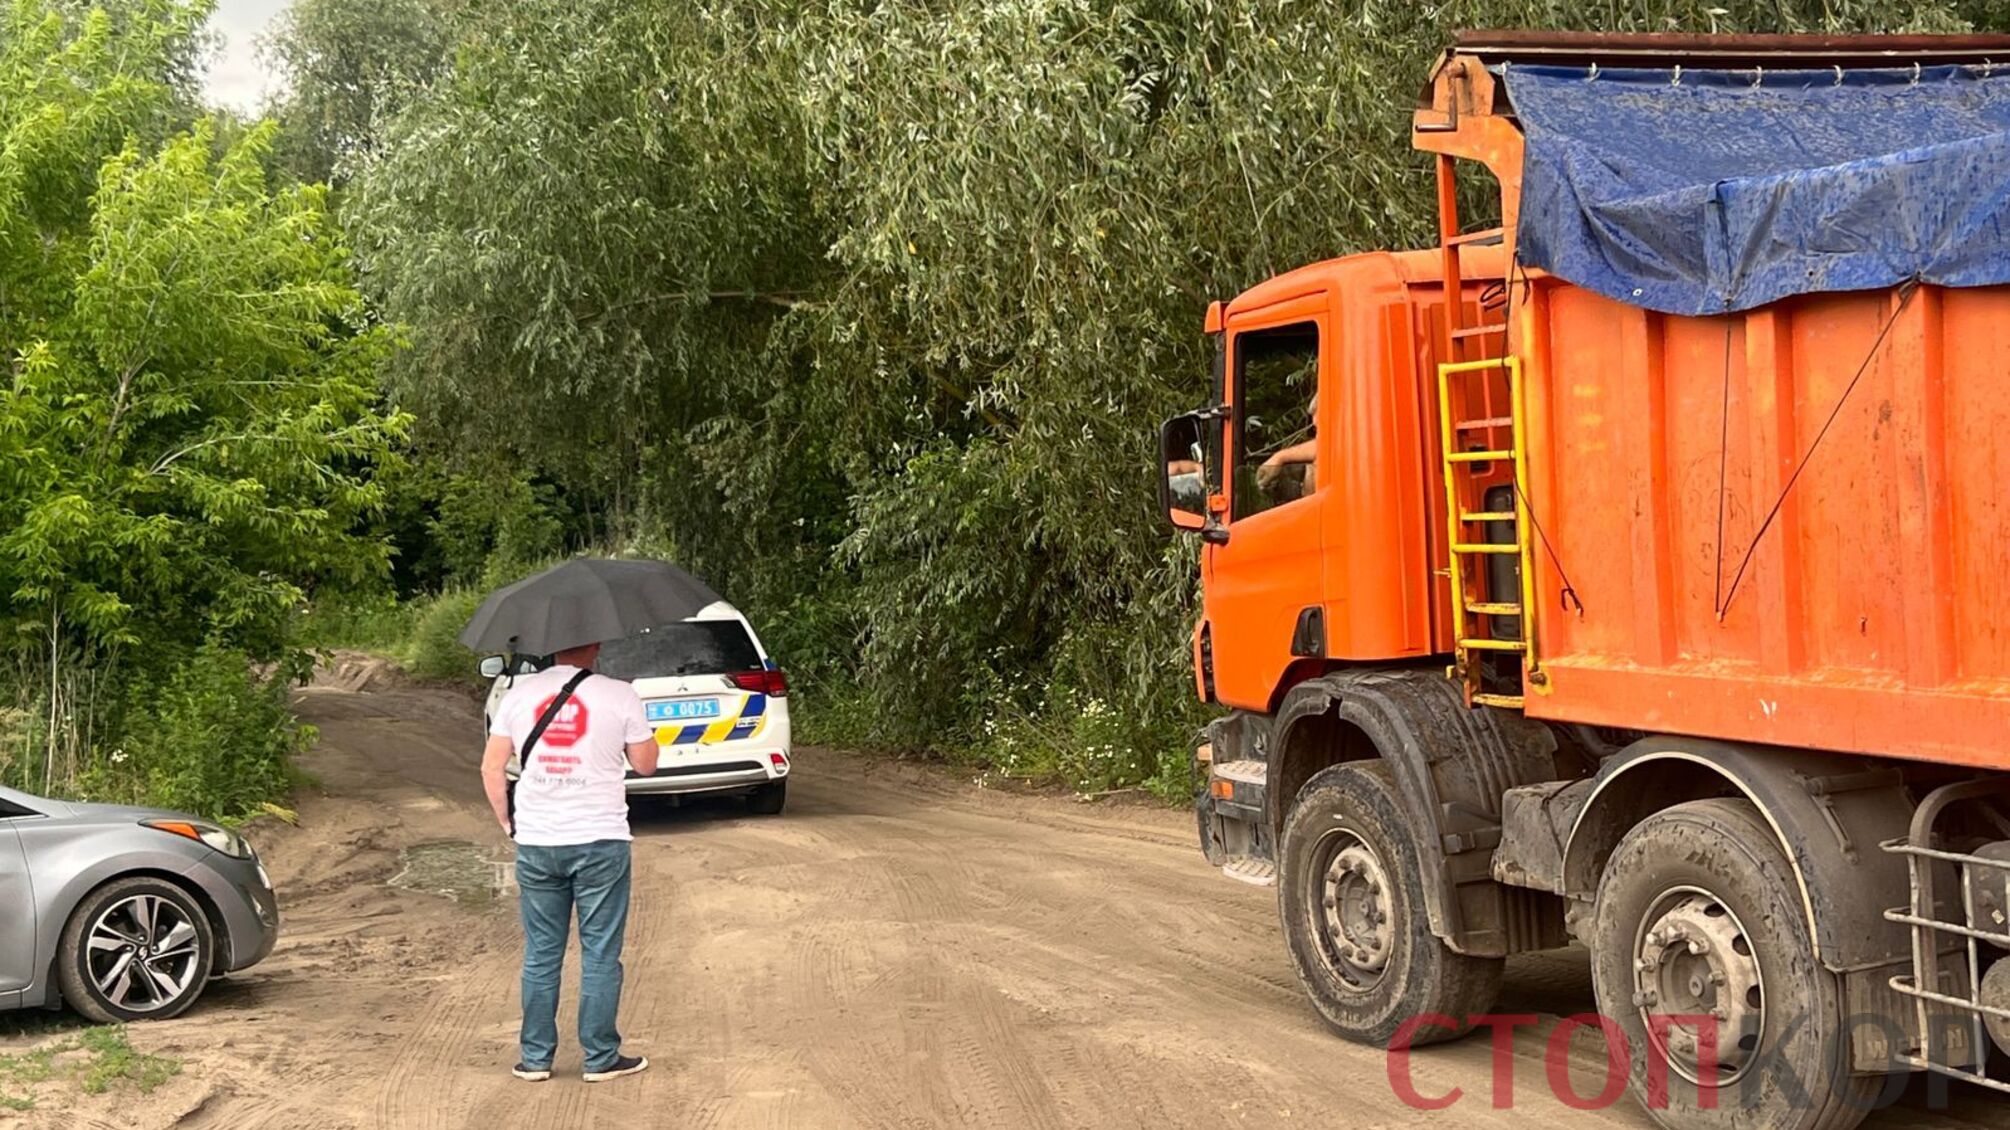 Наумець під санкціями, але справа його живе: вантажівки 'Юнігран' знову возять пісок на Київщині